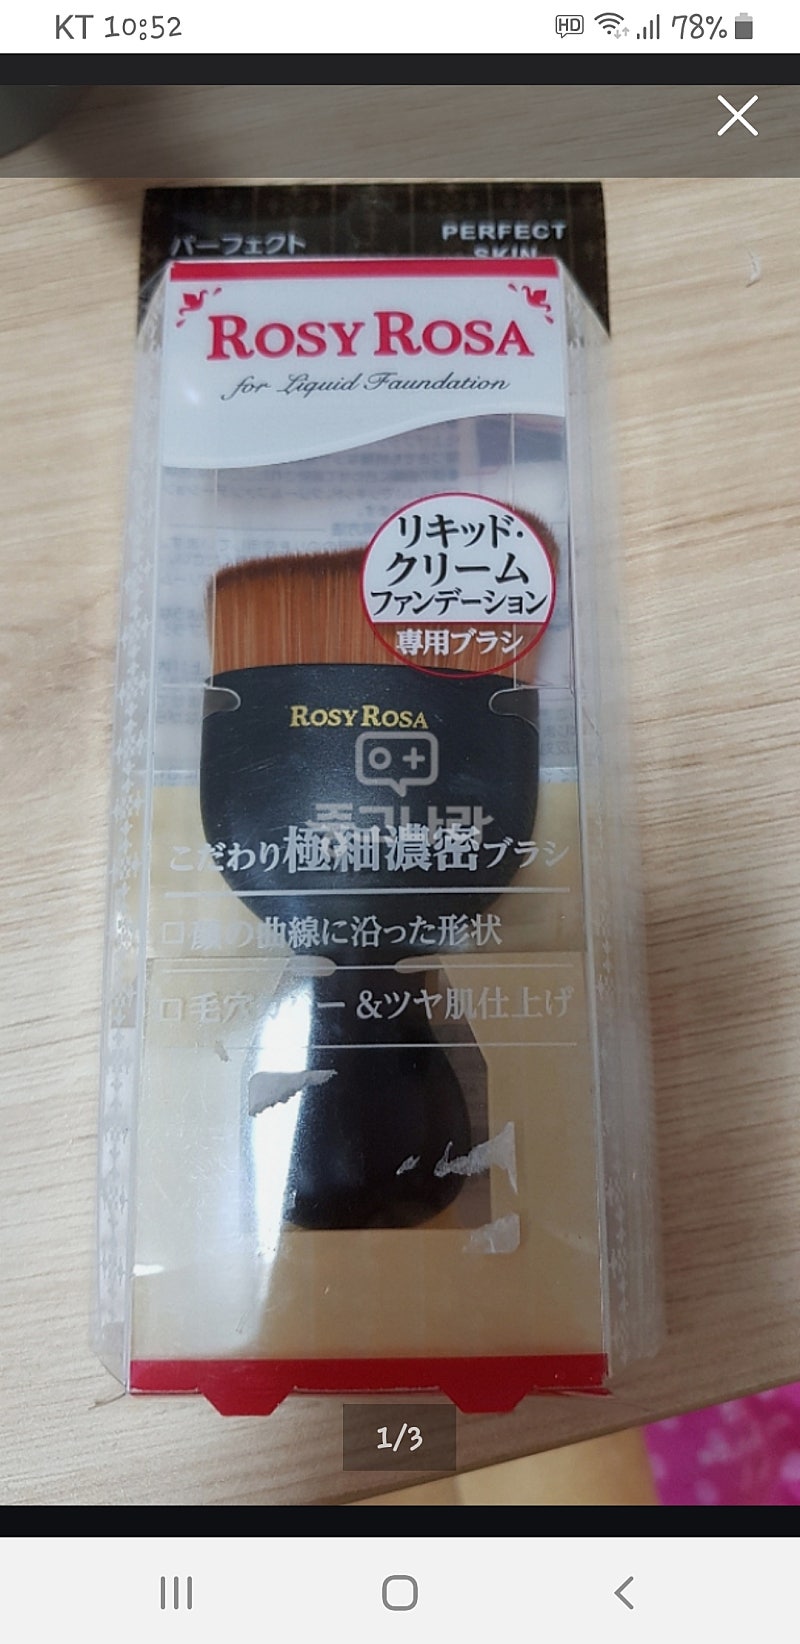 일본 ROSYROSA 로지로사 리퀴드크림 파운데이션  전용 브러쉬 새상품 반값택포1.5